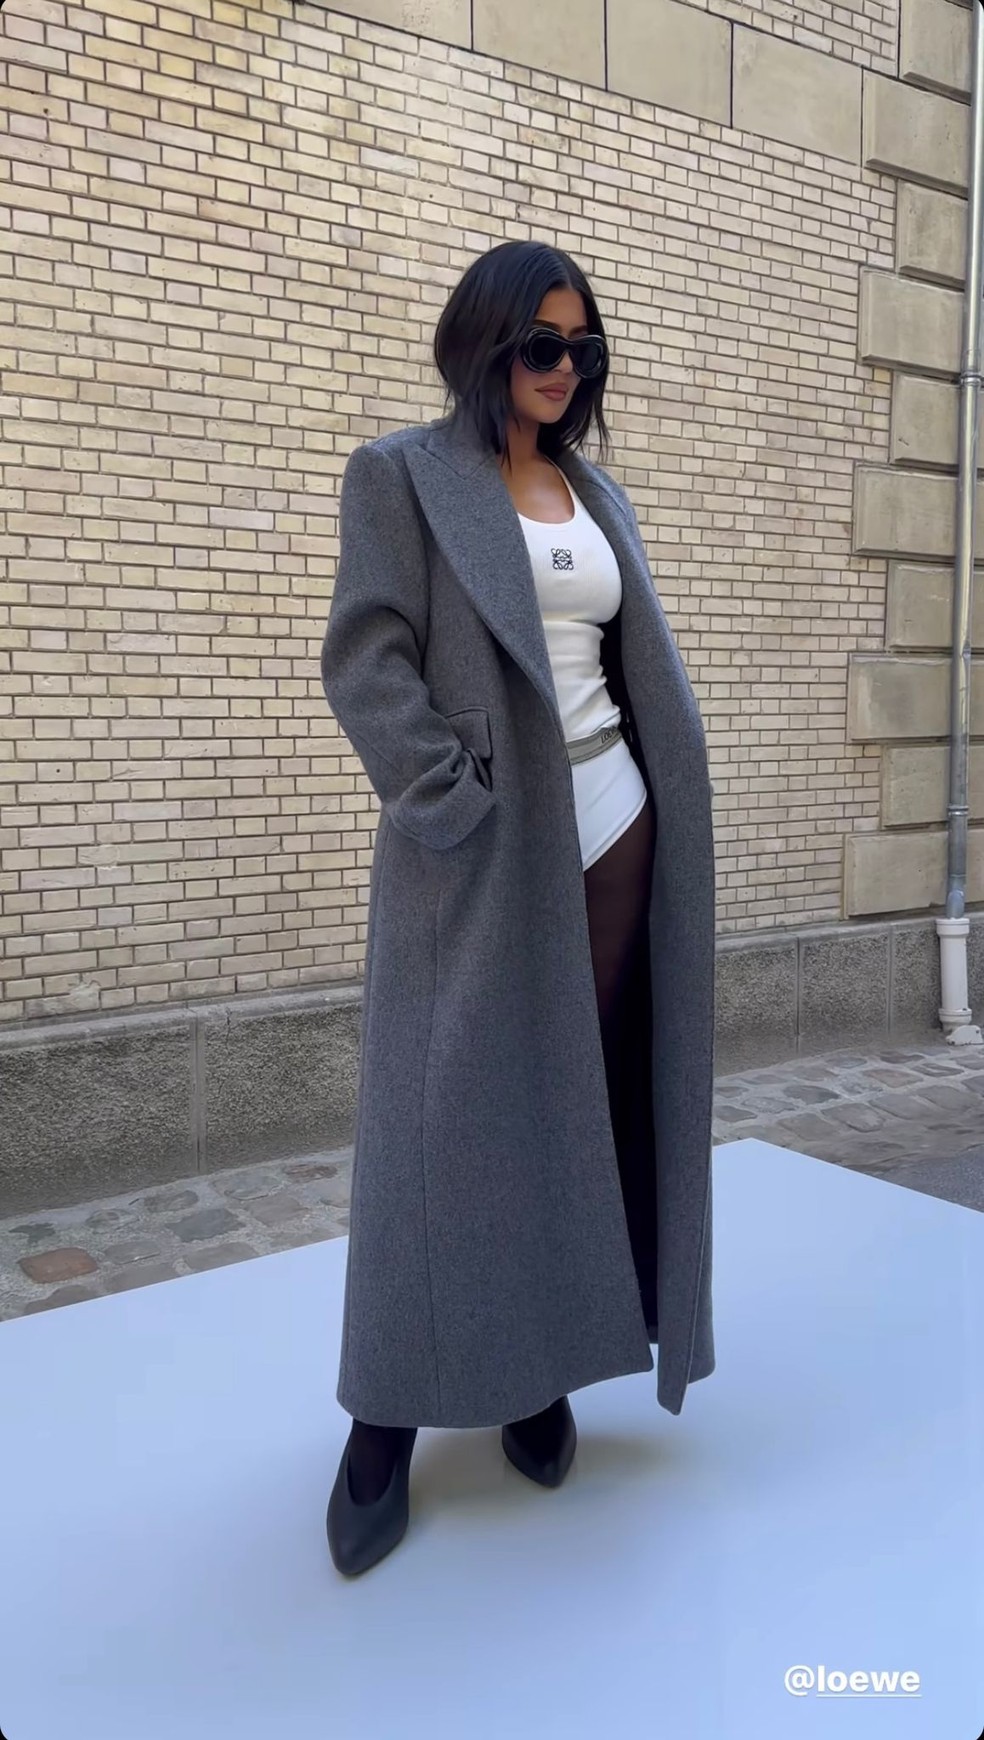 Kylie Jenner ᴀssiste ao desfile da Loewe com styling inusitado: meia-calça  e cueca | Moda | Vogue